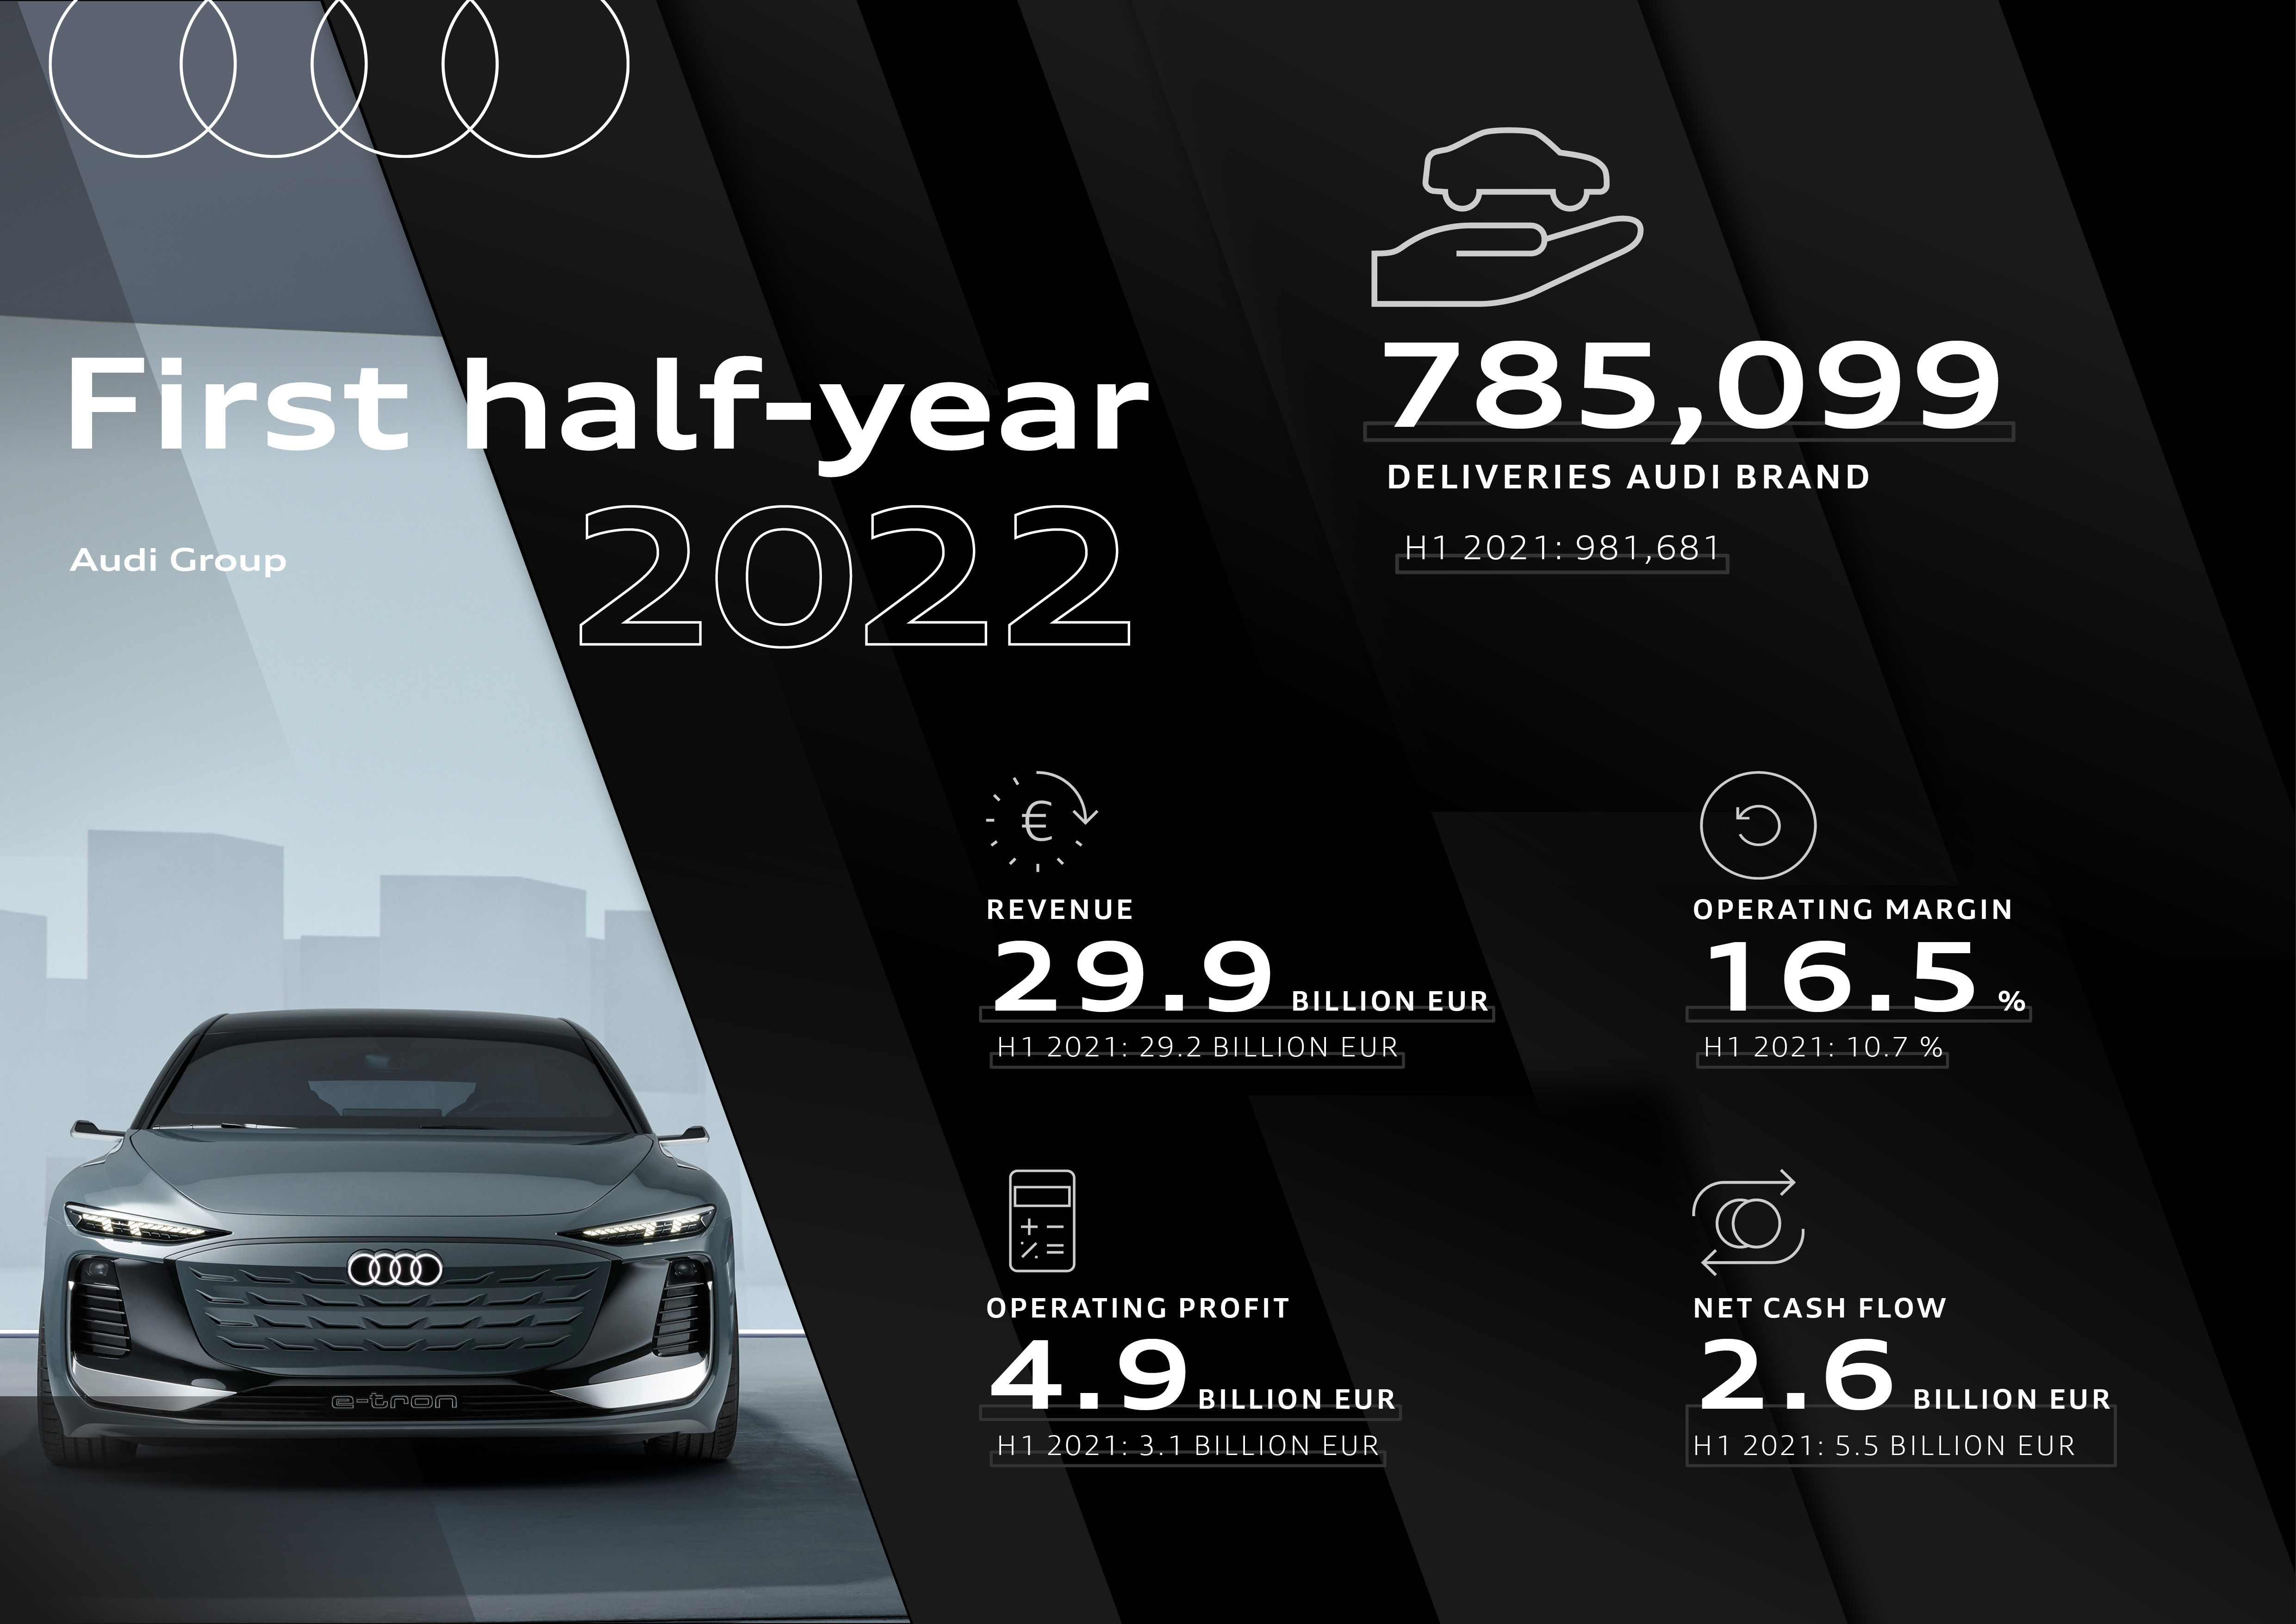 Audi-koncernen: All time high-resultat under första halvåret 2022